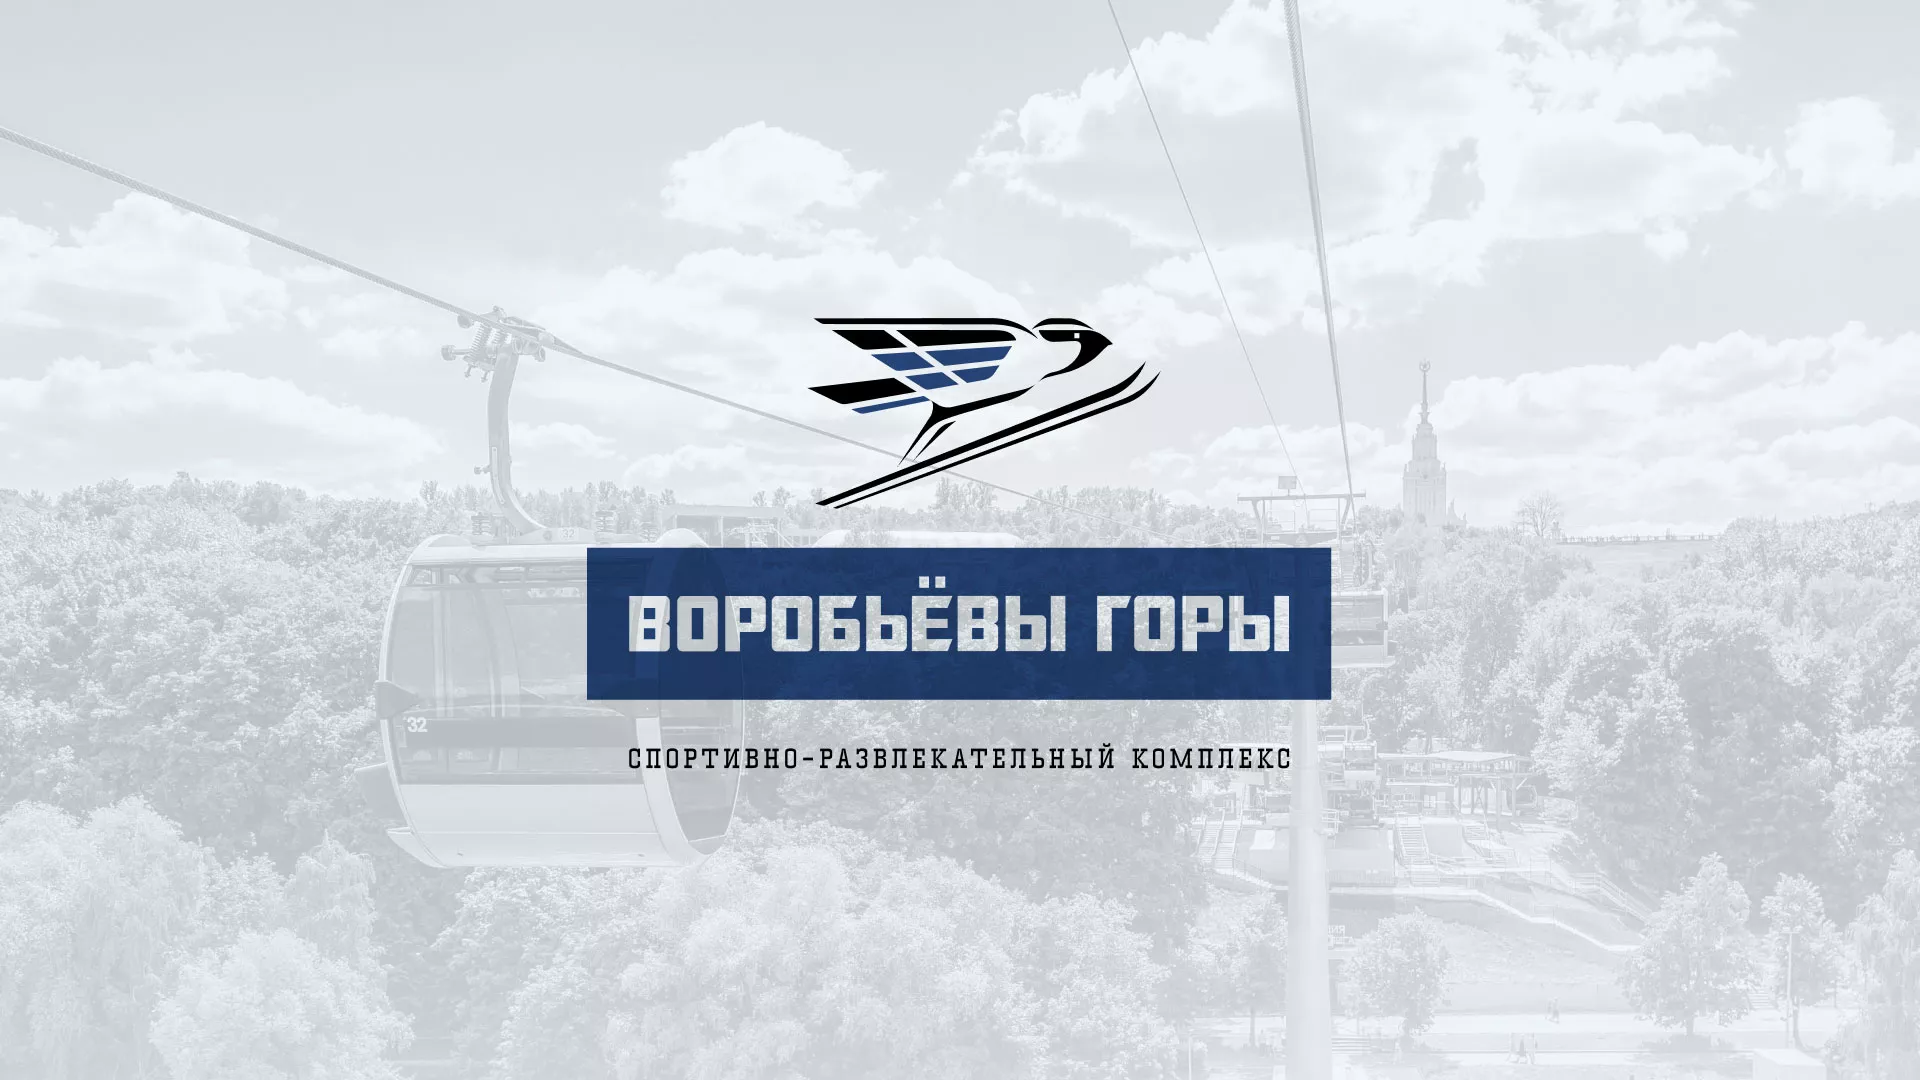 Разработка сайта в Малоярославце для спортивно-развлекательного комплекса «Воробьёвы горы»